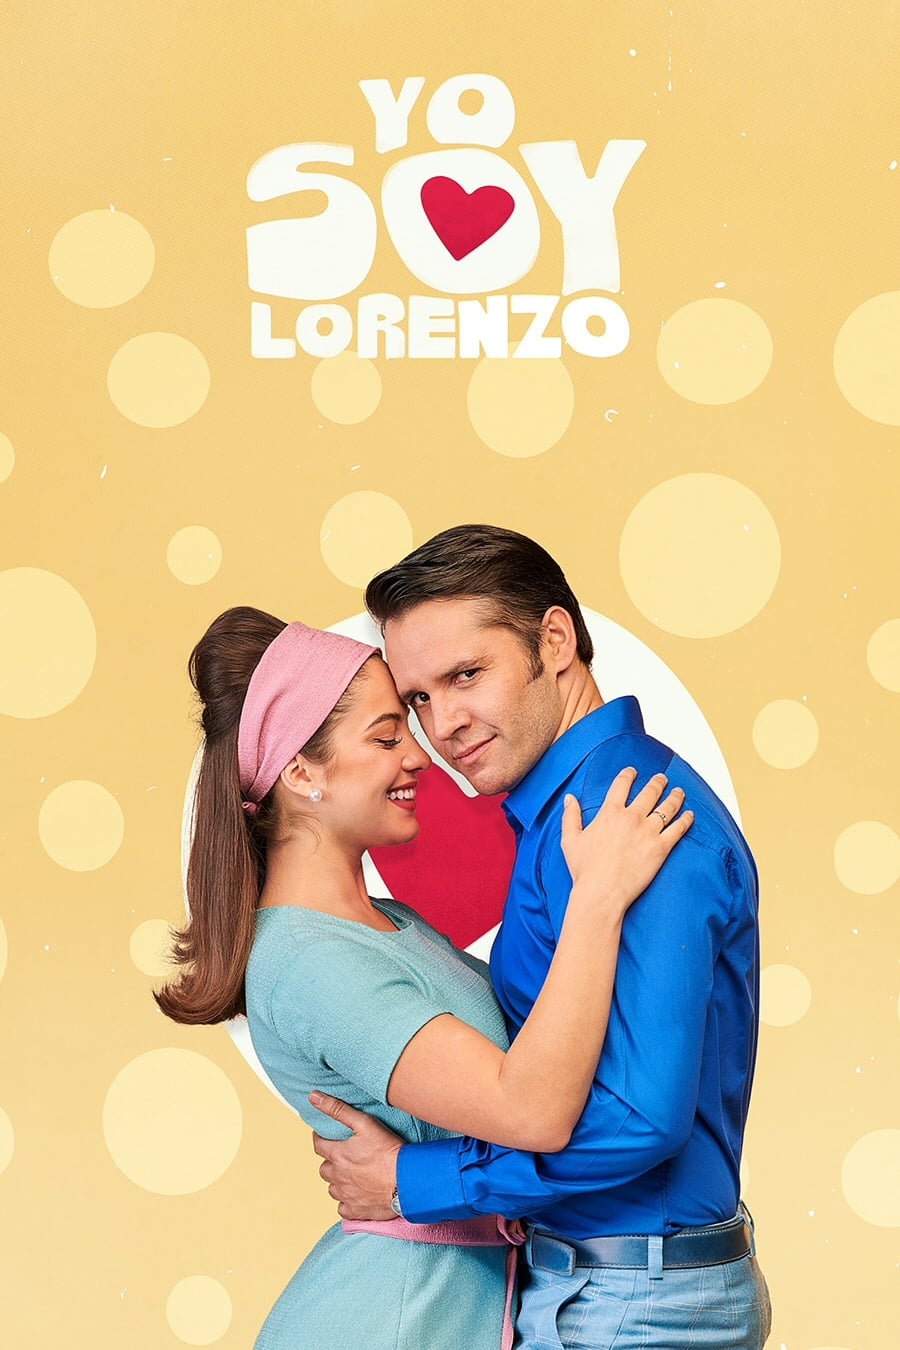 Yo soy Lorenzo TV Shows About 1960s